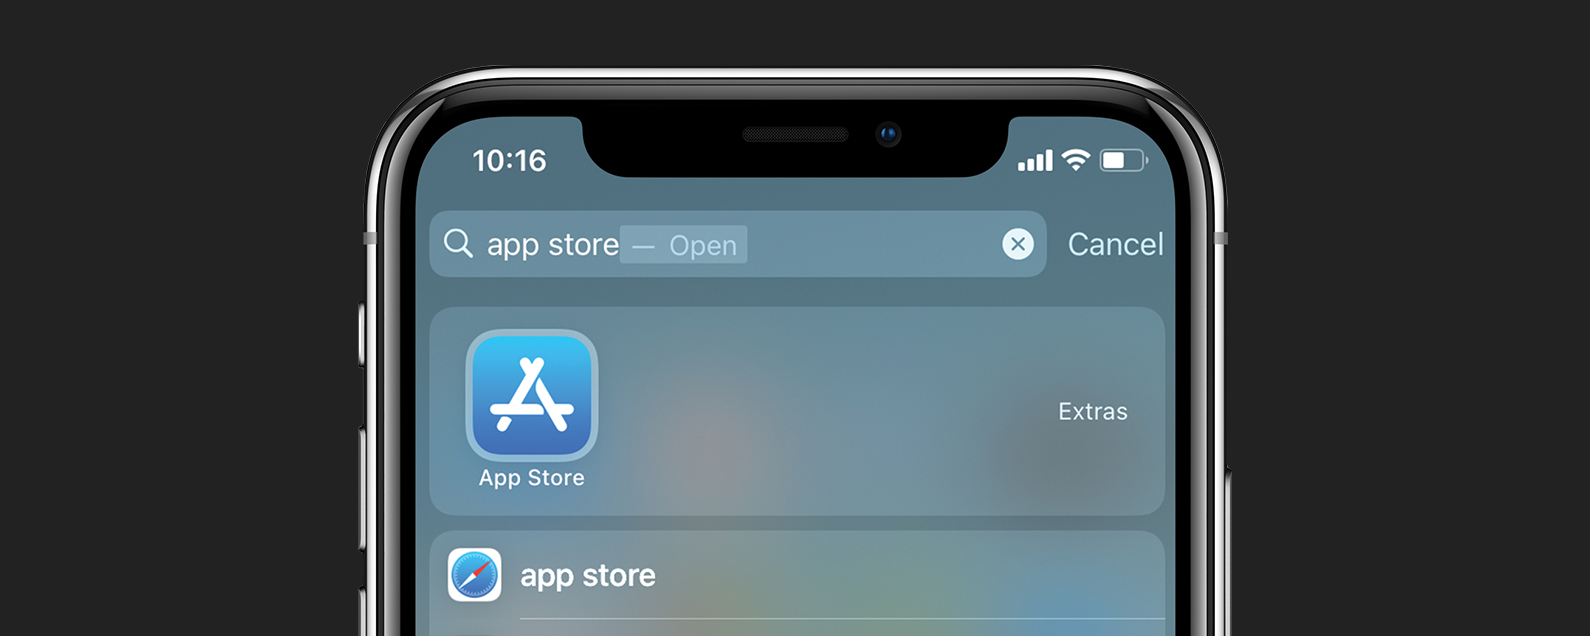 app store app is missing